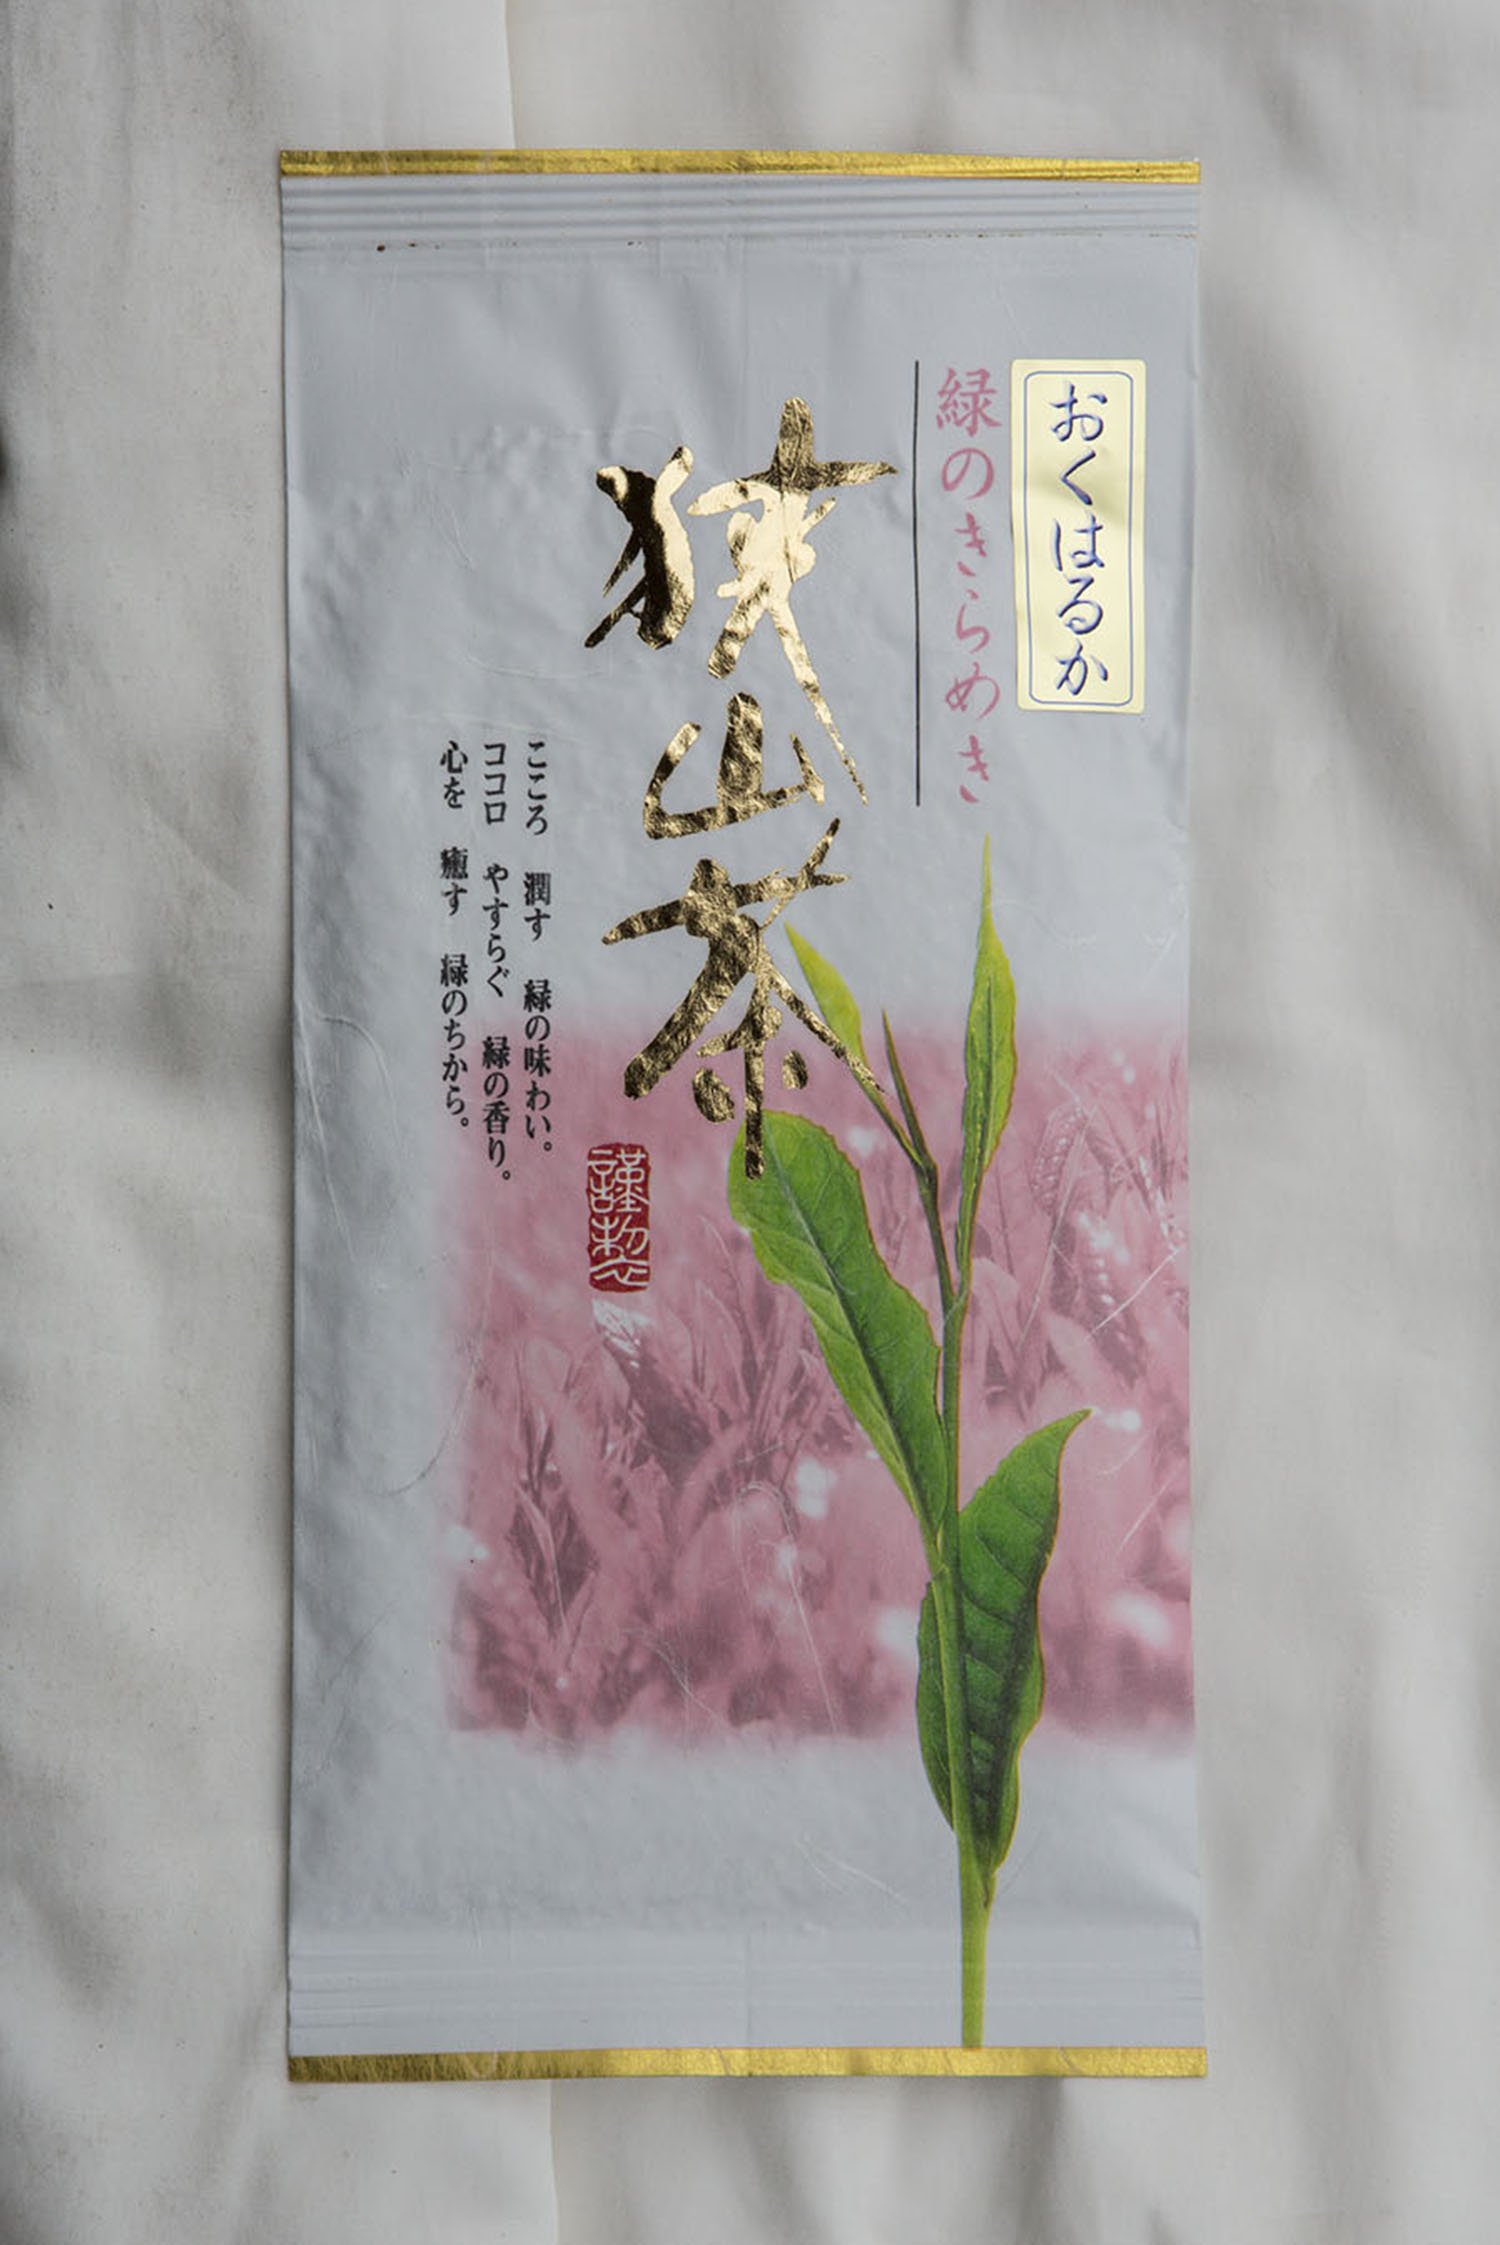 「おくはるか」1080円はほのかな桜葉の香りが特徴の一品。